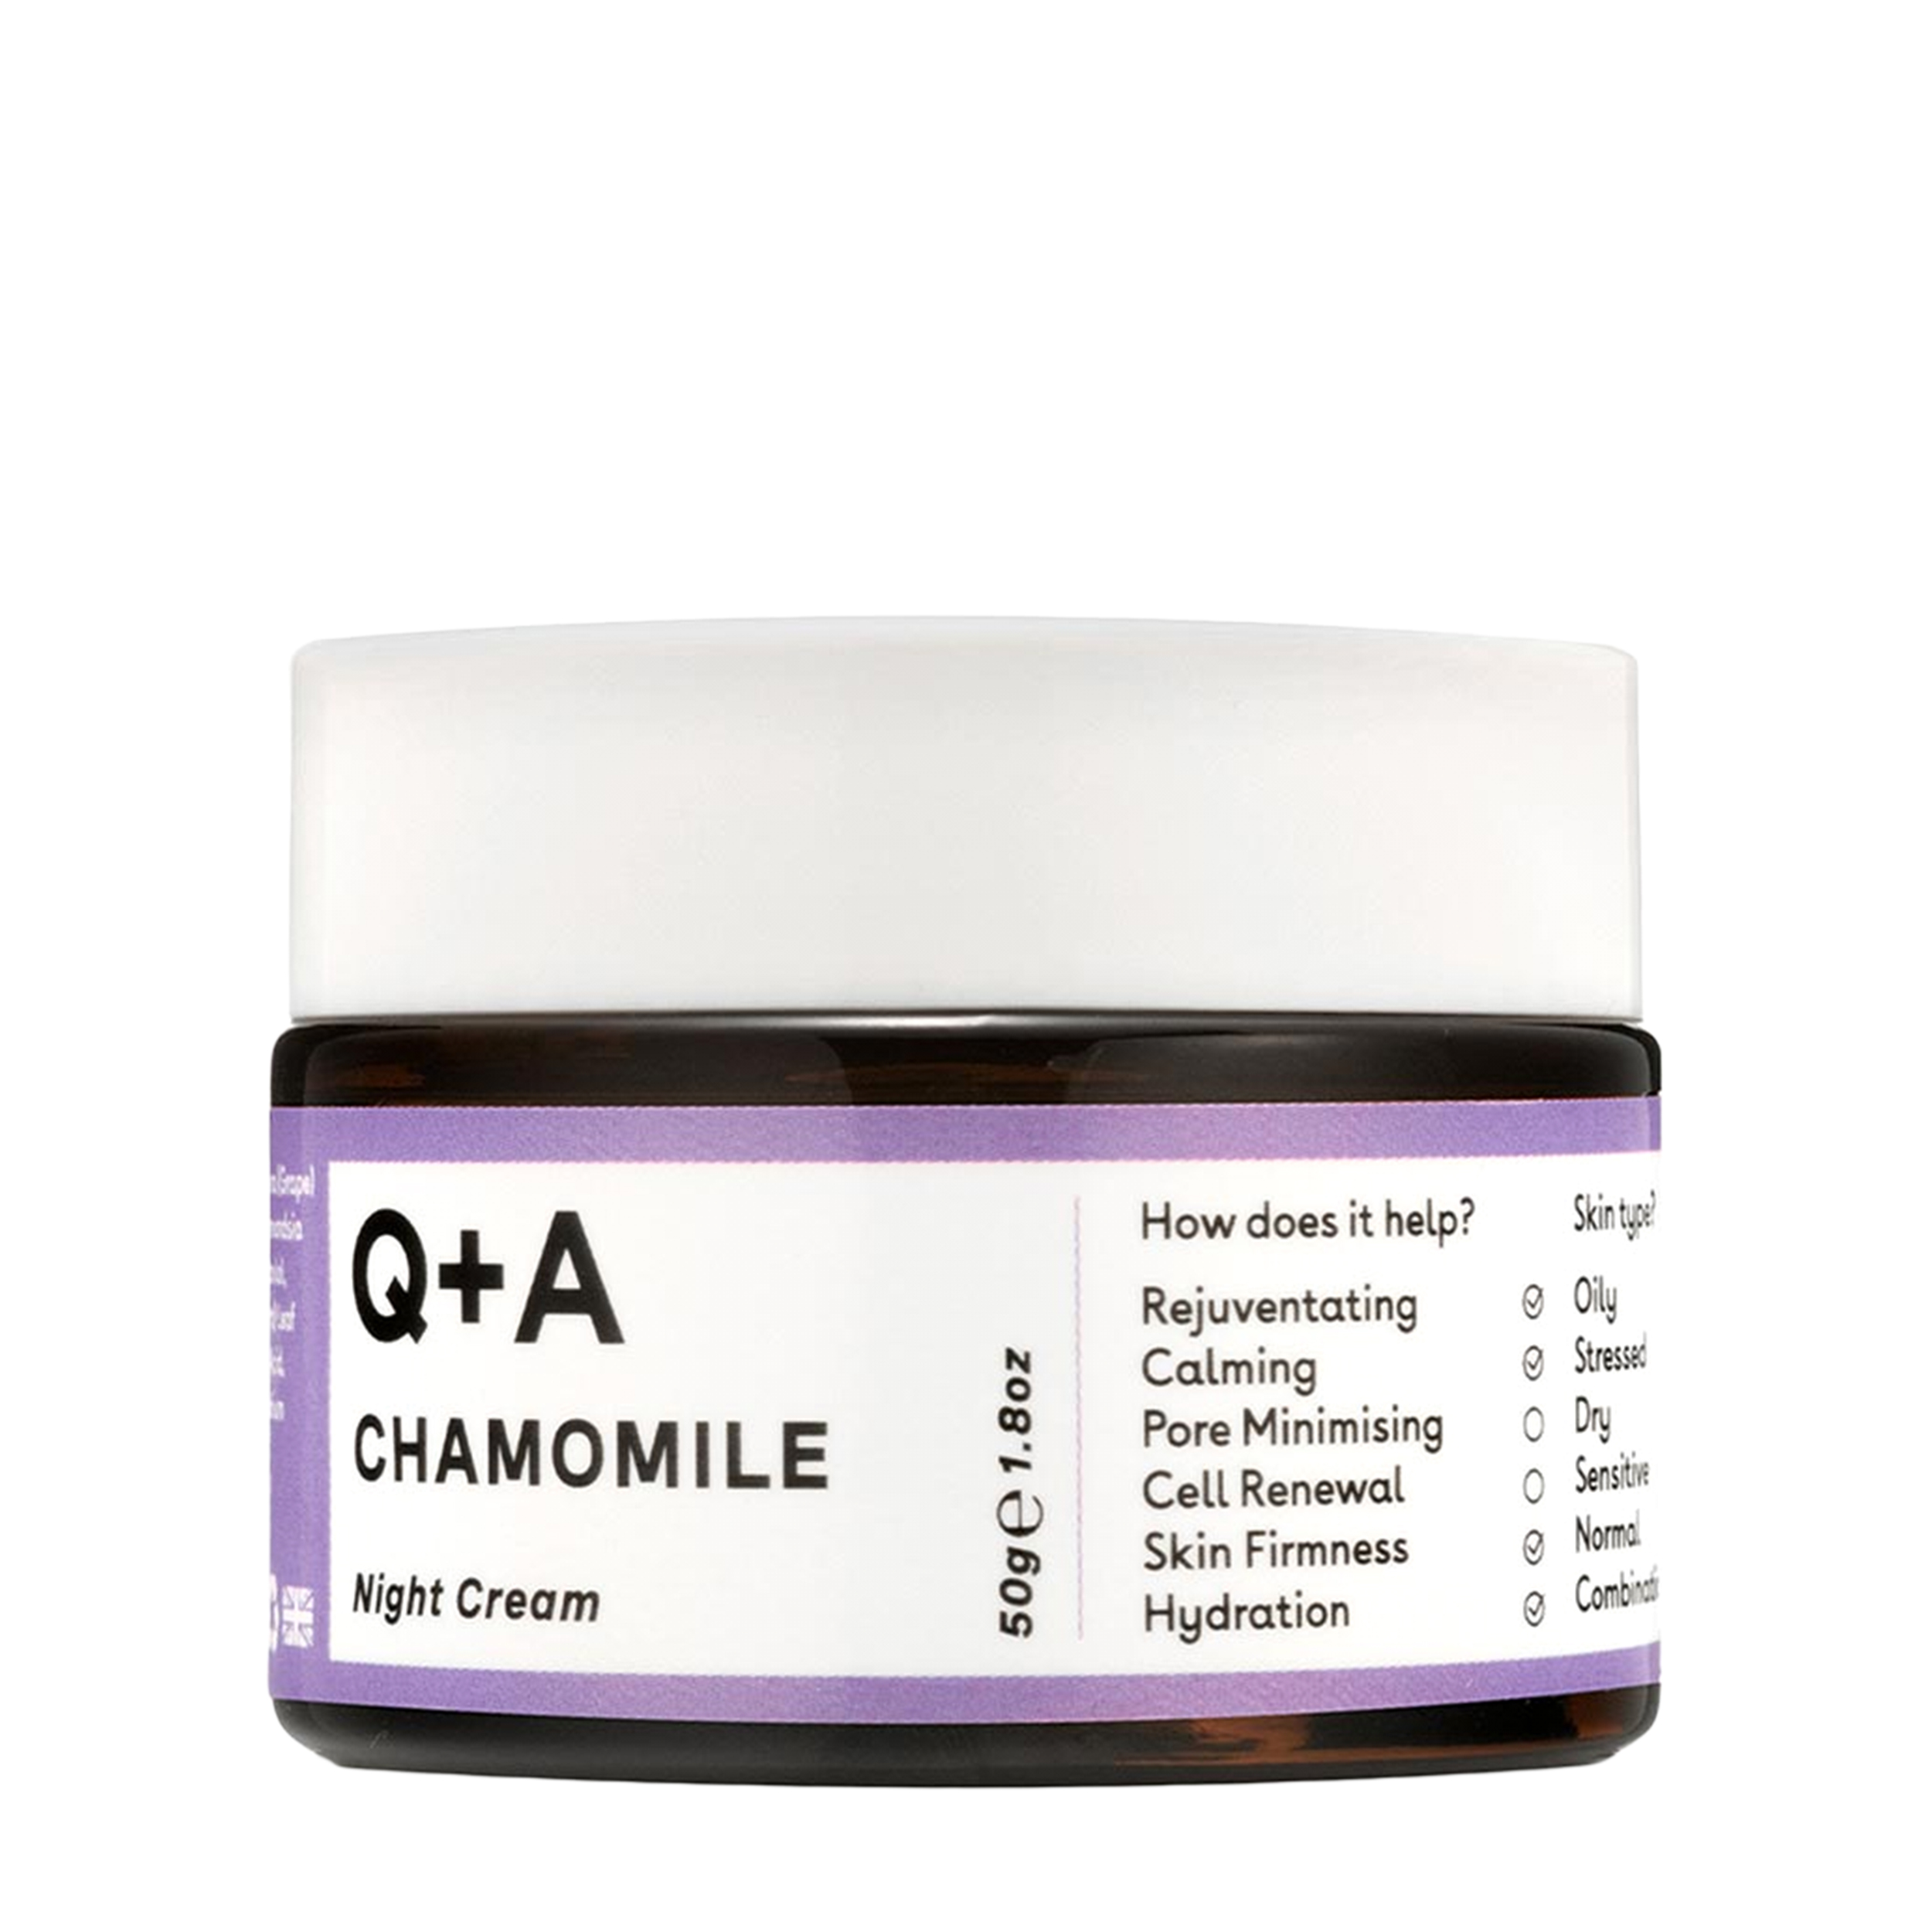 Q+A Q+A Успокаивающий ночной крем для лица Chamomile 50 гр